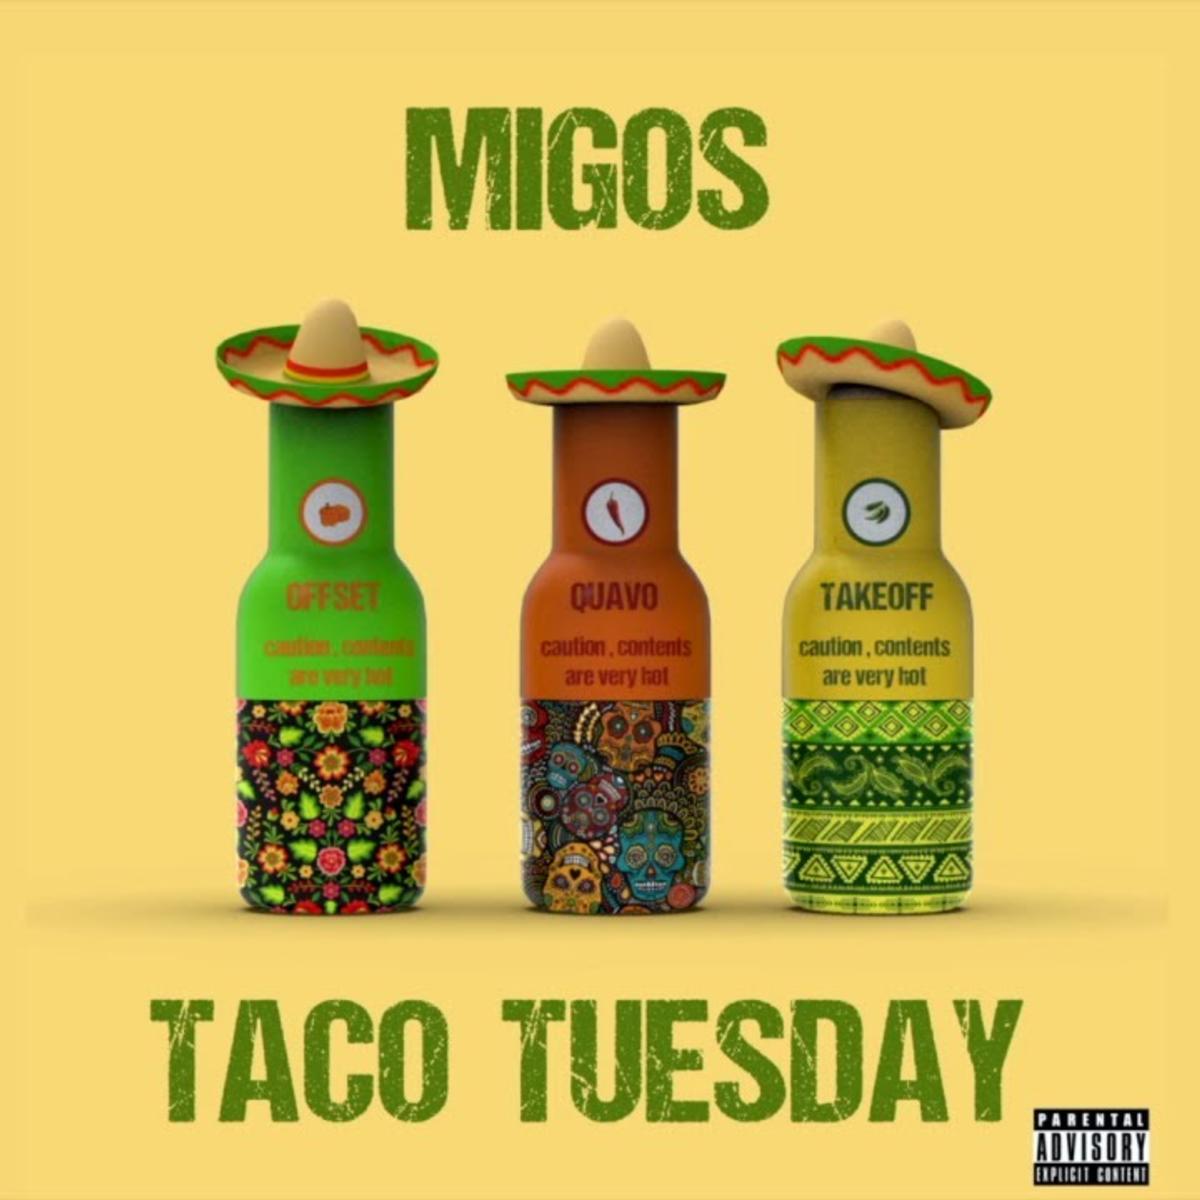 Migos Taco Tuesday